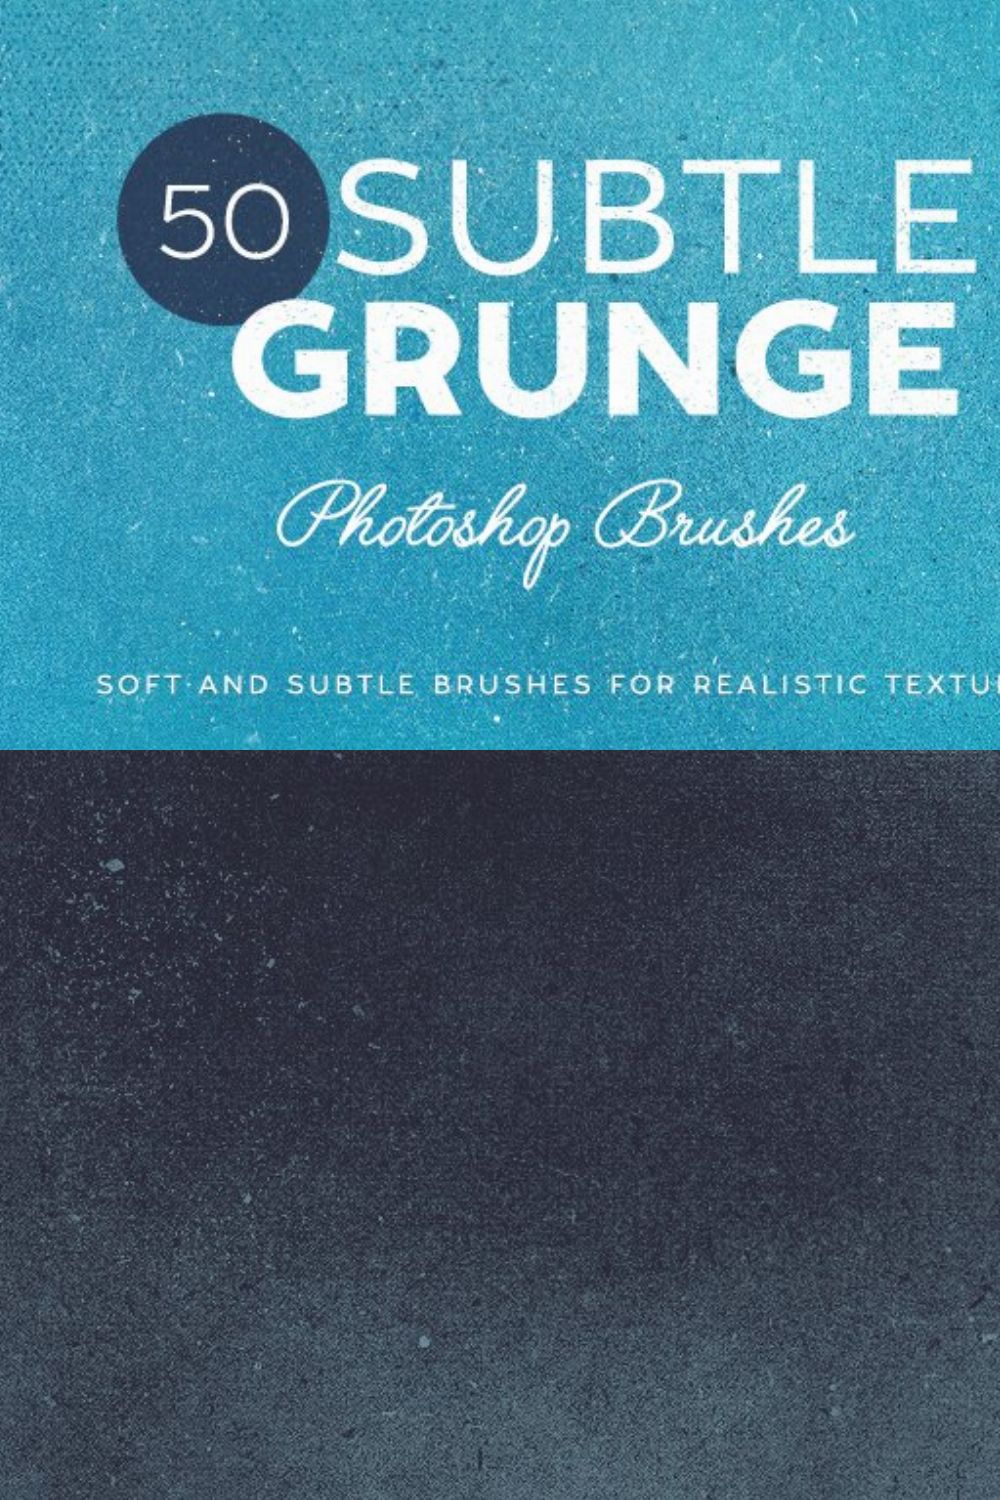 50 Subtle Grunge Brushes pinterest preview image.